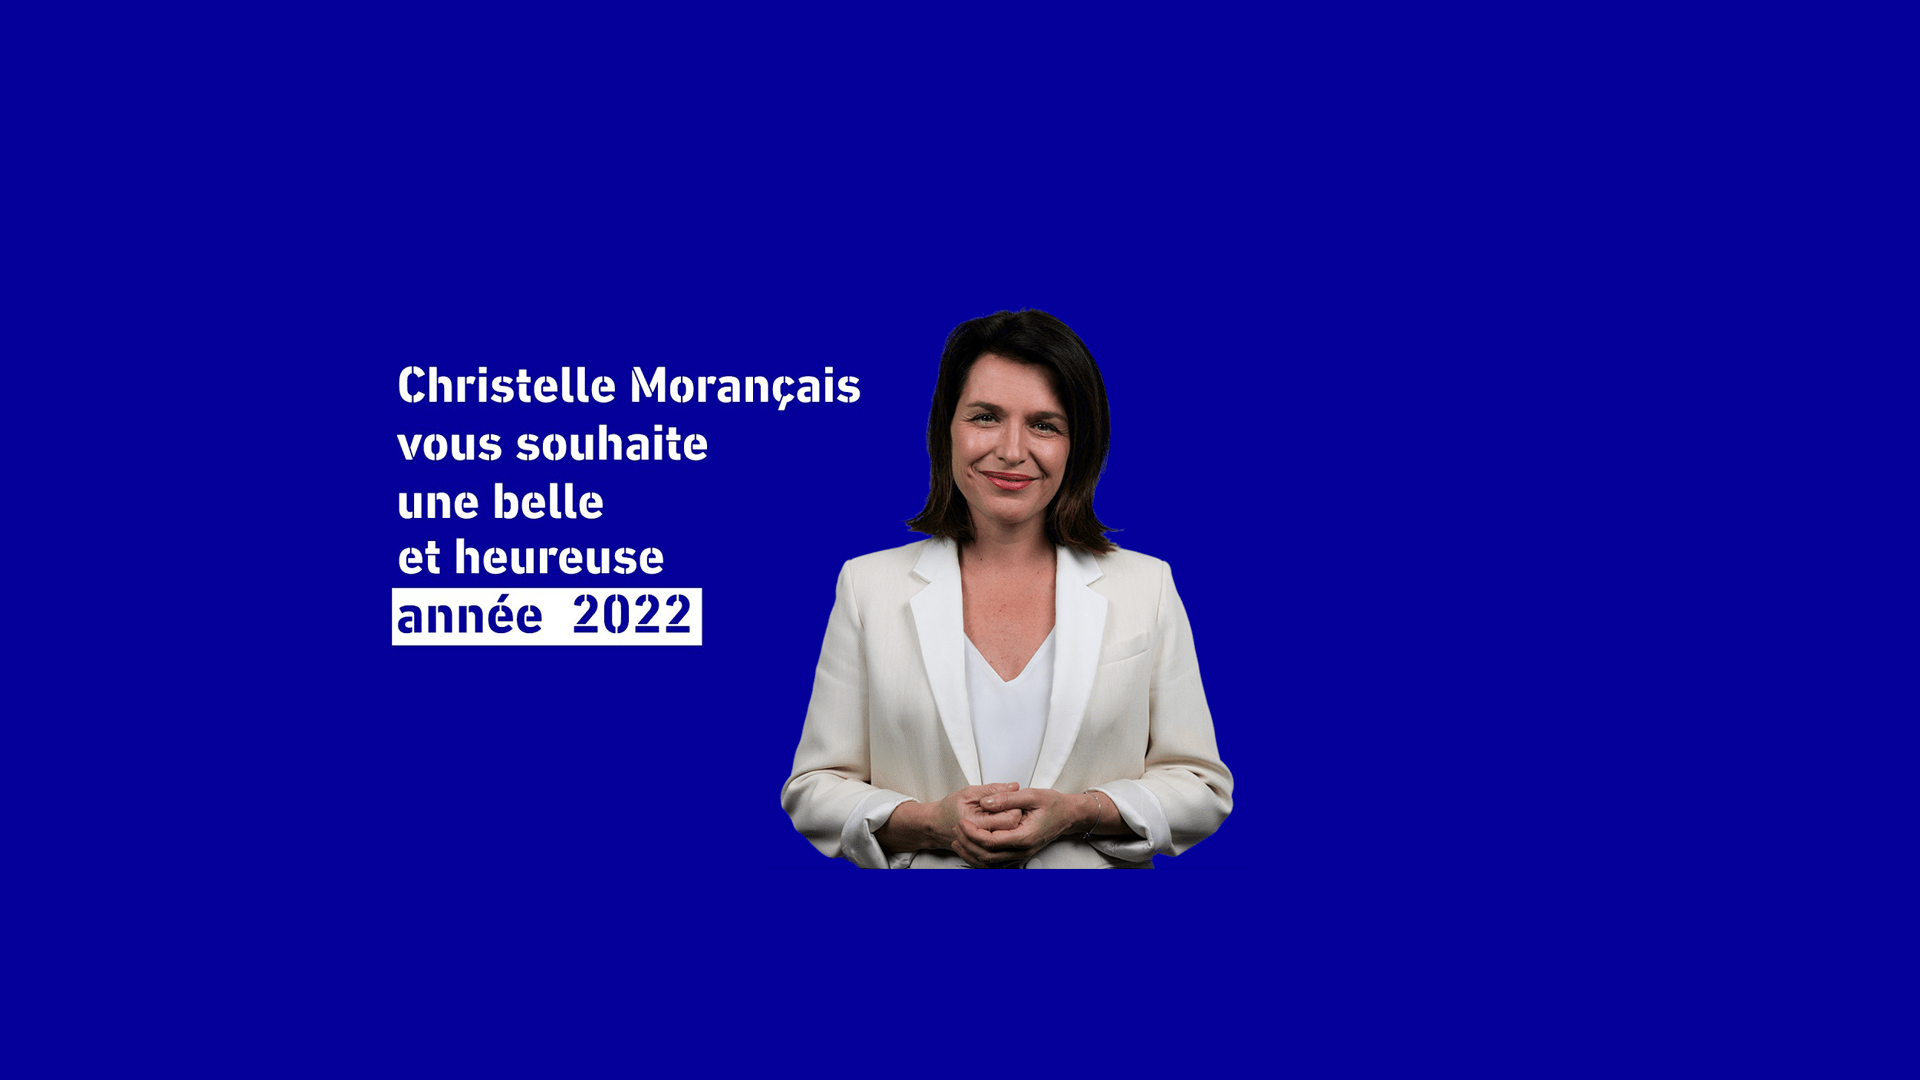 Christelle Morançais vous une belle et heureuse année 2022